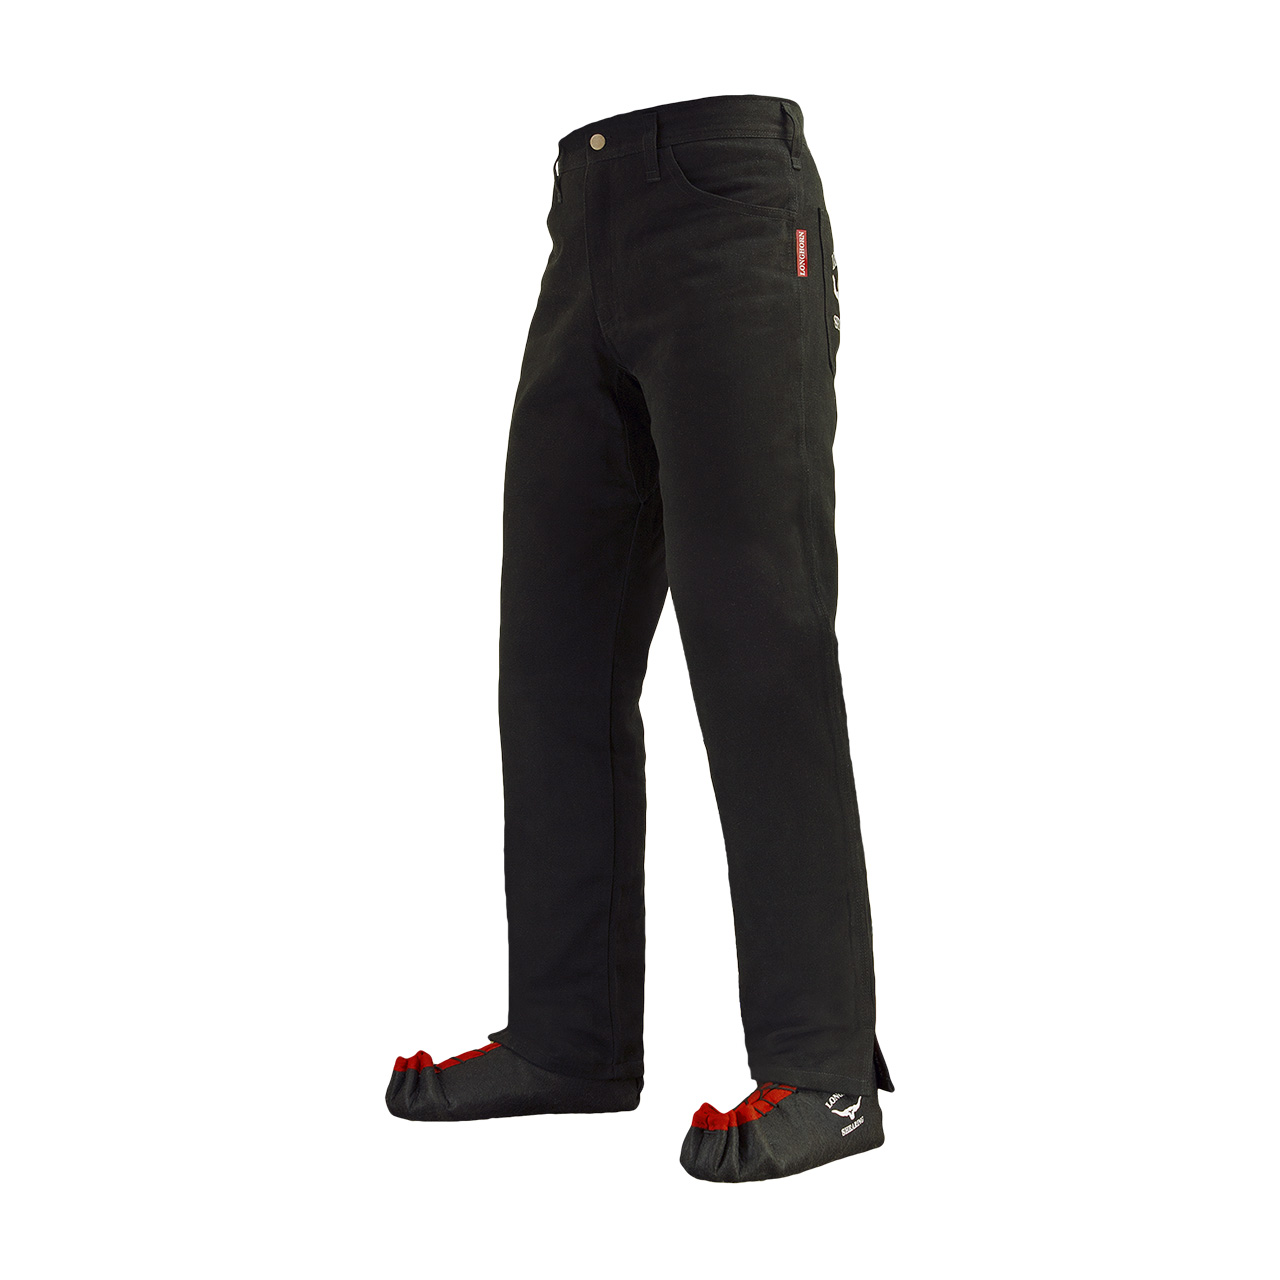 Longhorn™ kalhoty pro střihače ovcí s 2 předními kapsami velikost Short 30/28 3S